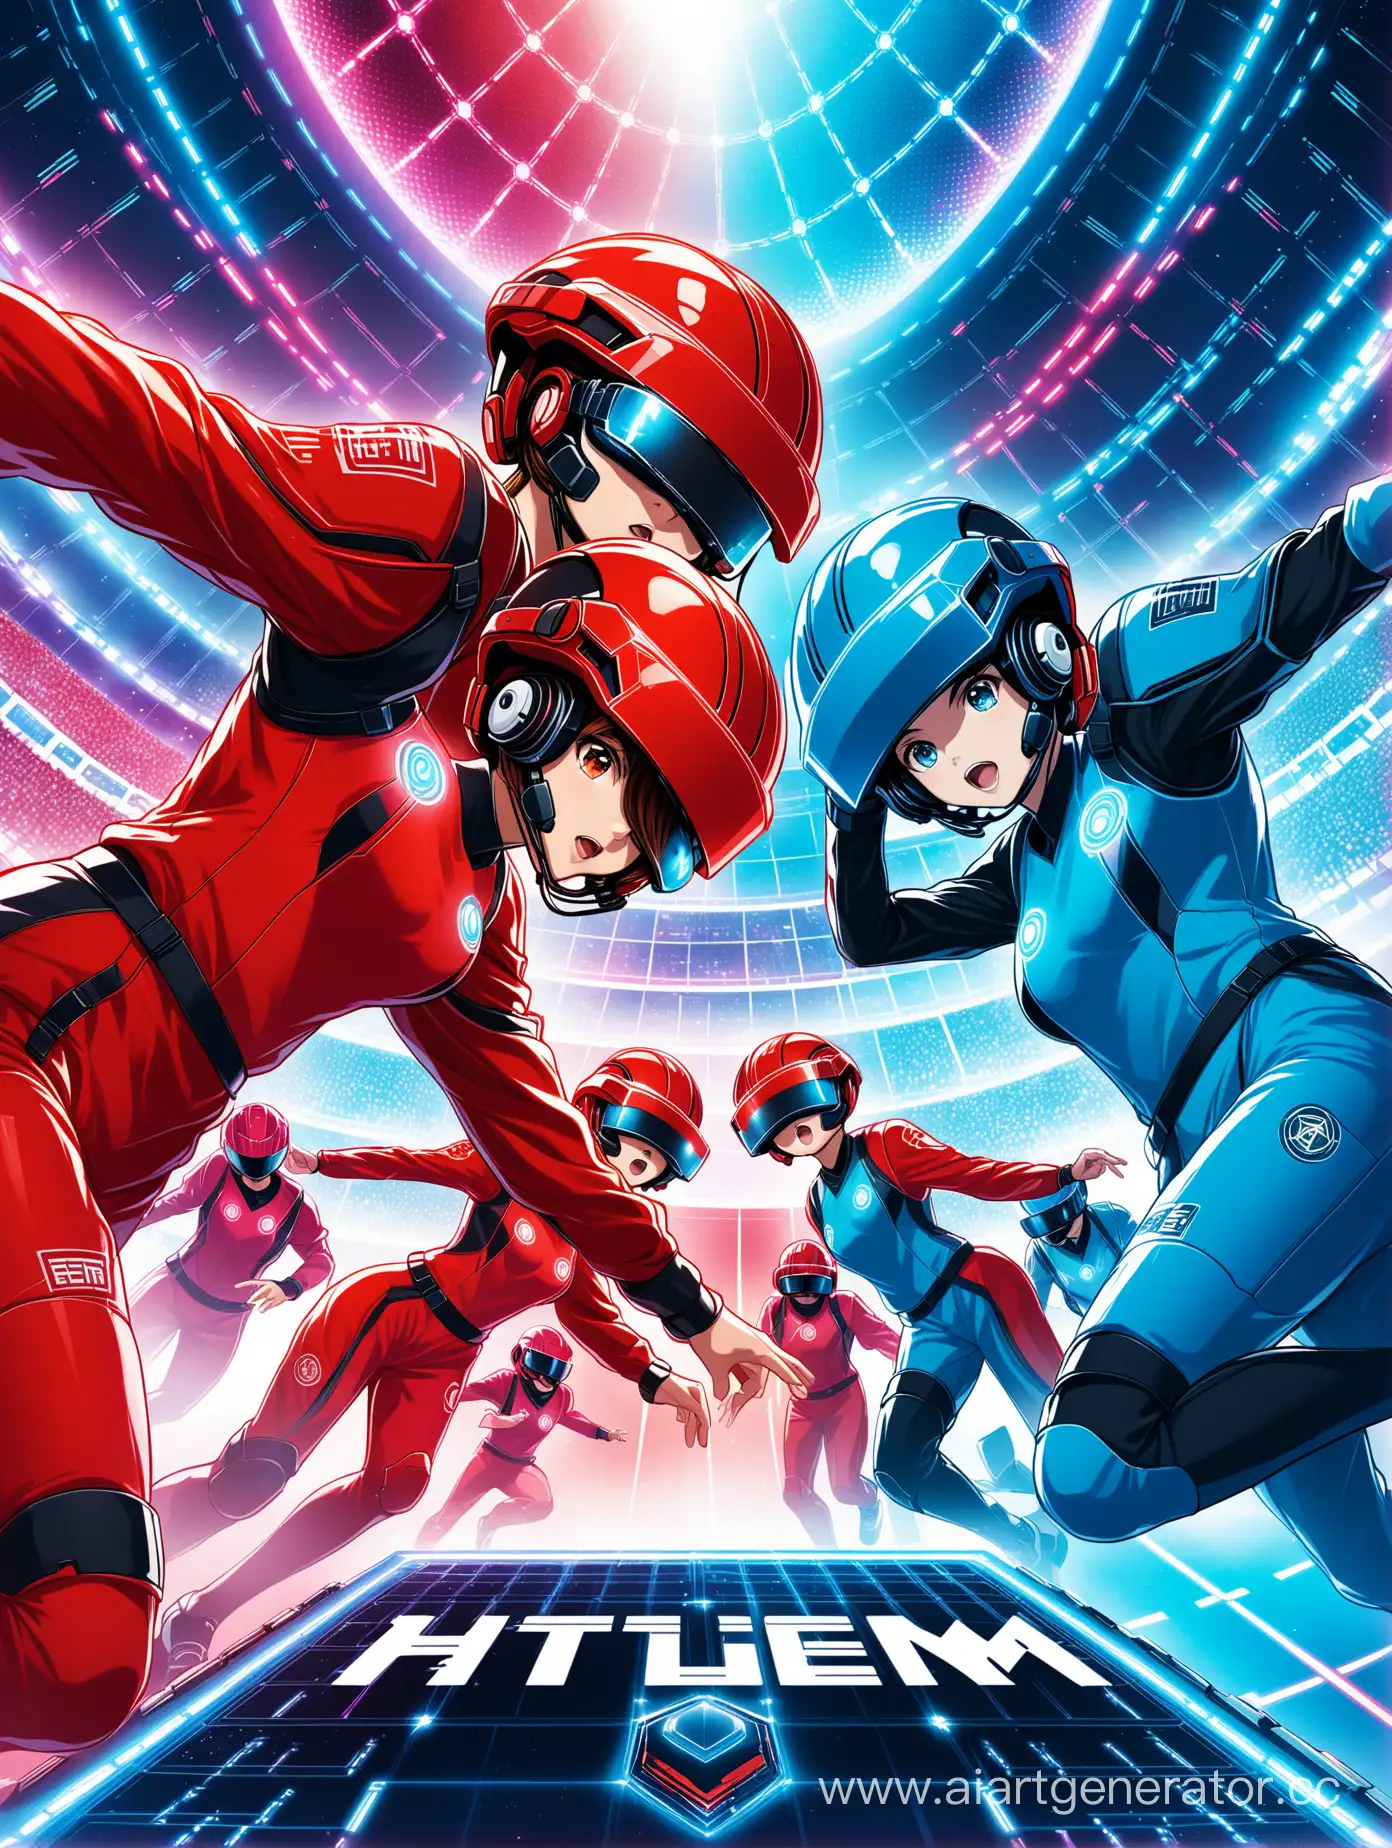 Дизайн плаката, на котором изображены две команды подростков сражающихся в шлемах виртуальной реальности, одна команда в красной форме, другая в синей. Фон напоминает футуристическую арену.